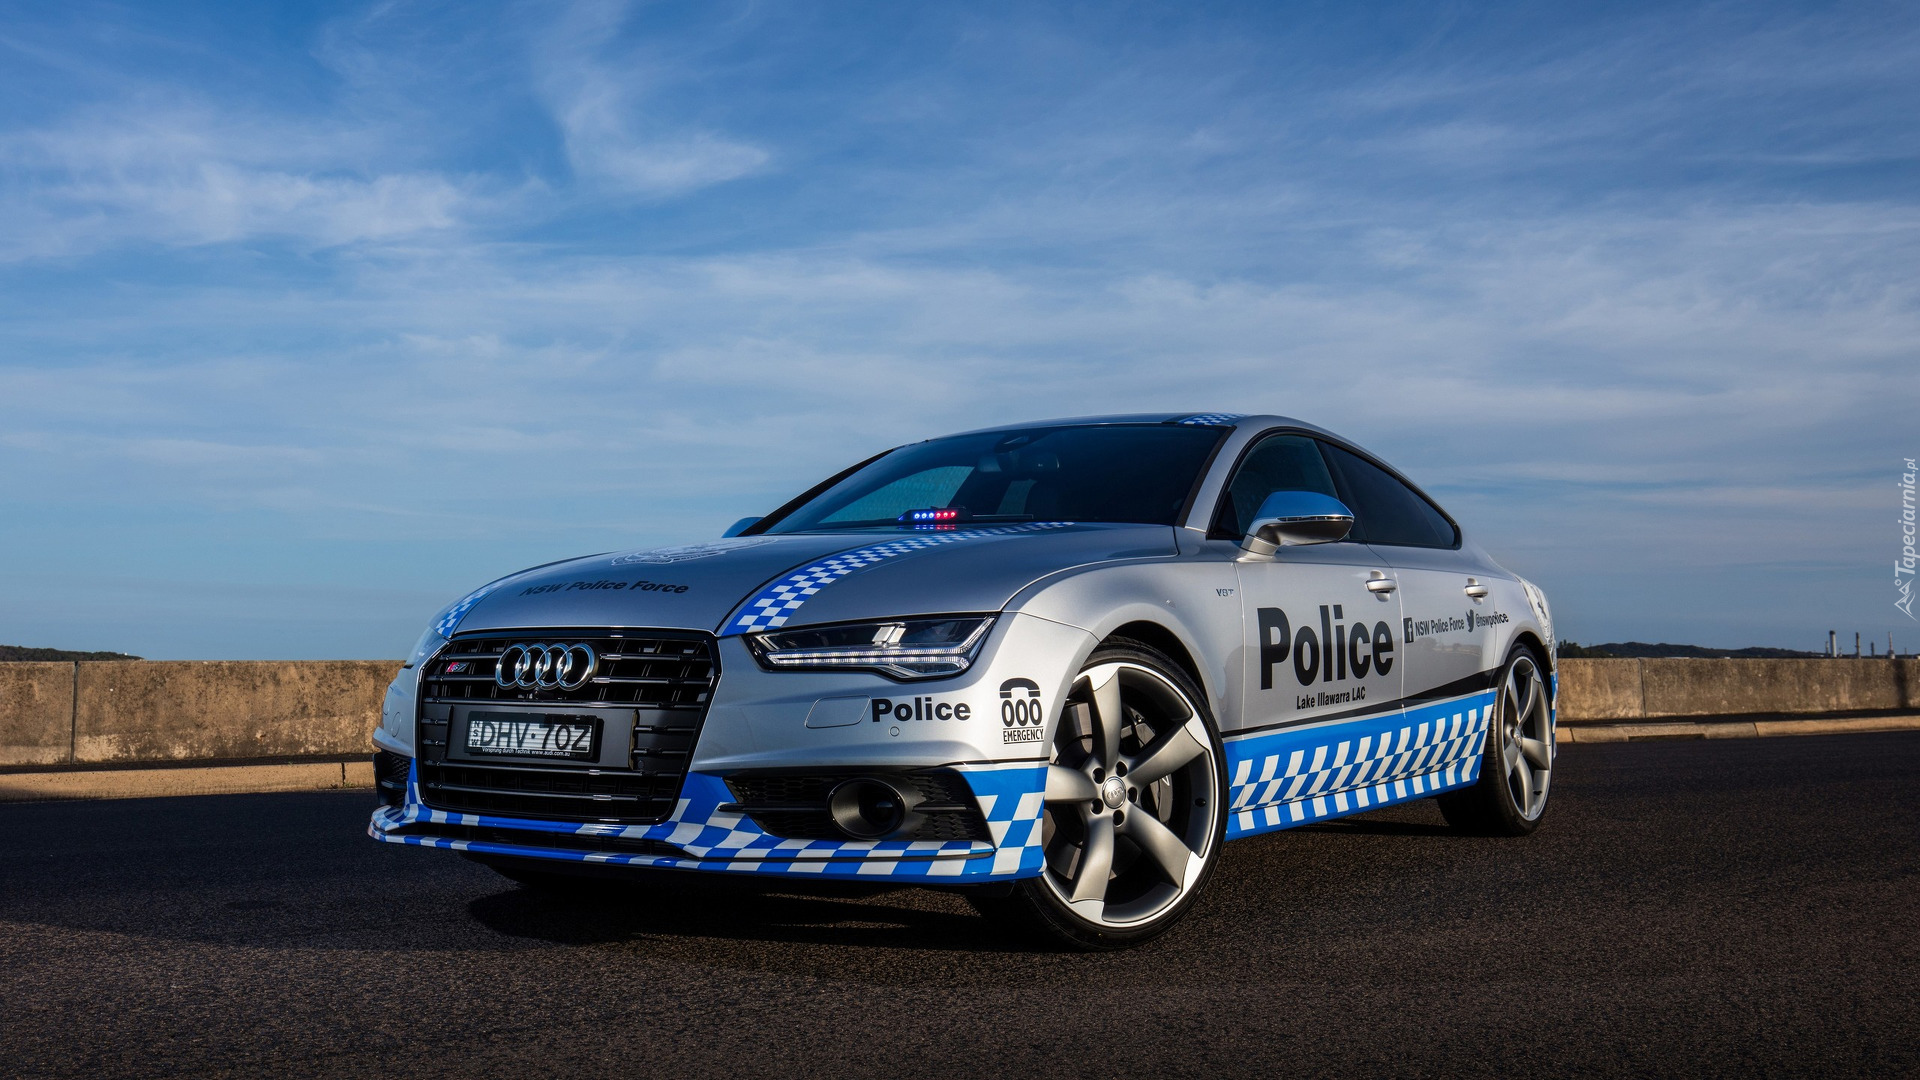 Samochód, Policyjny, Audi S7 Sportback, 2016